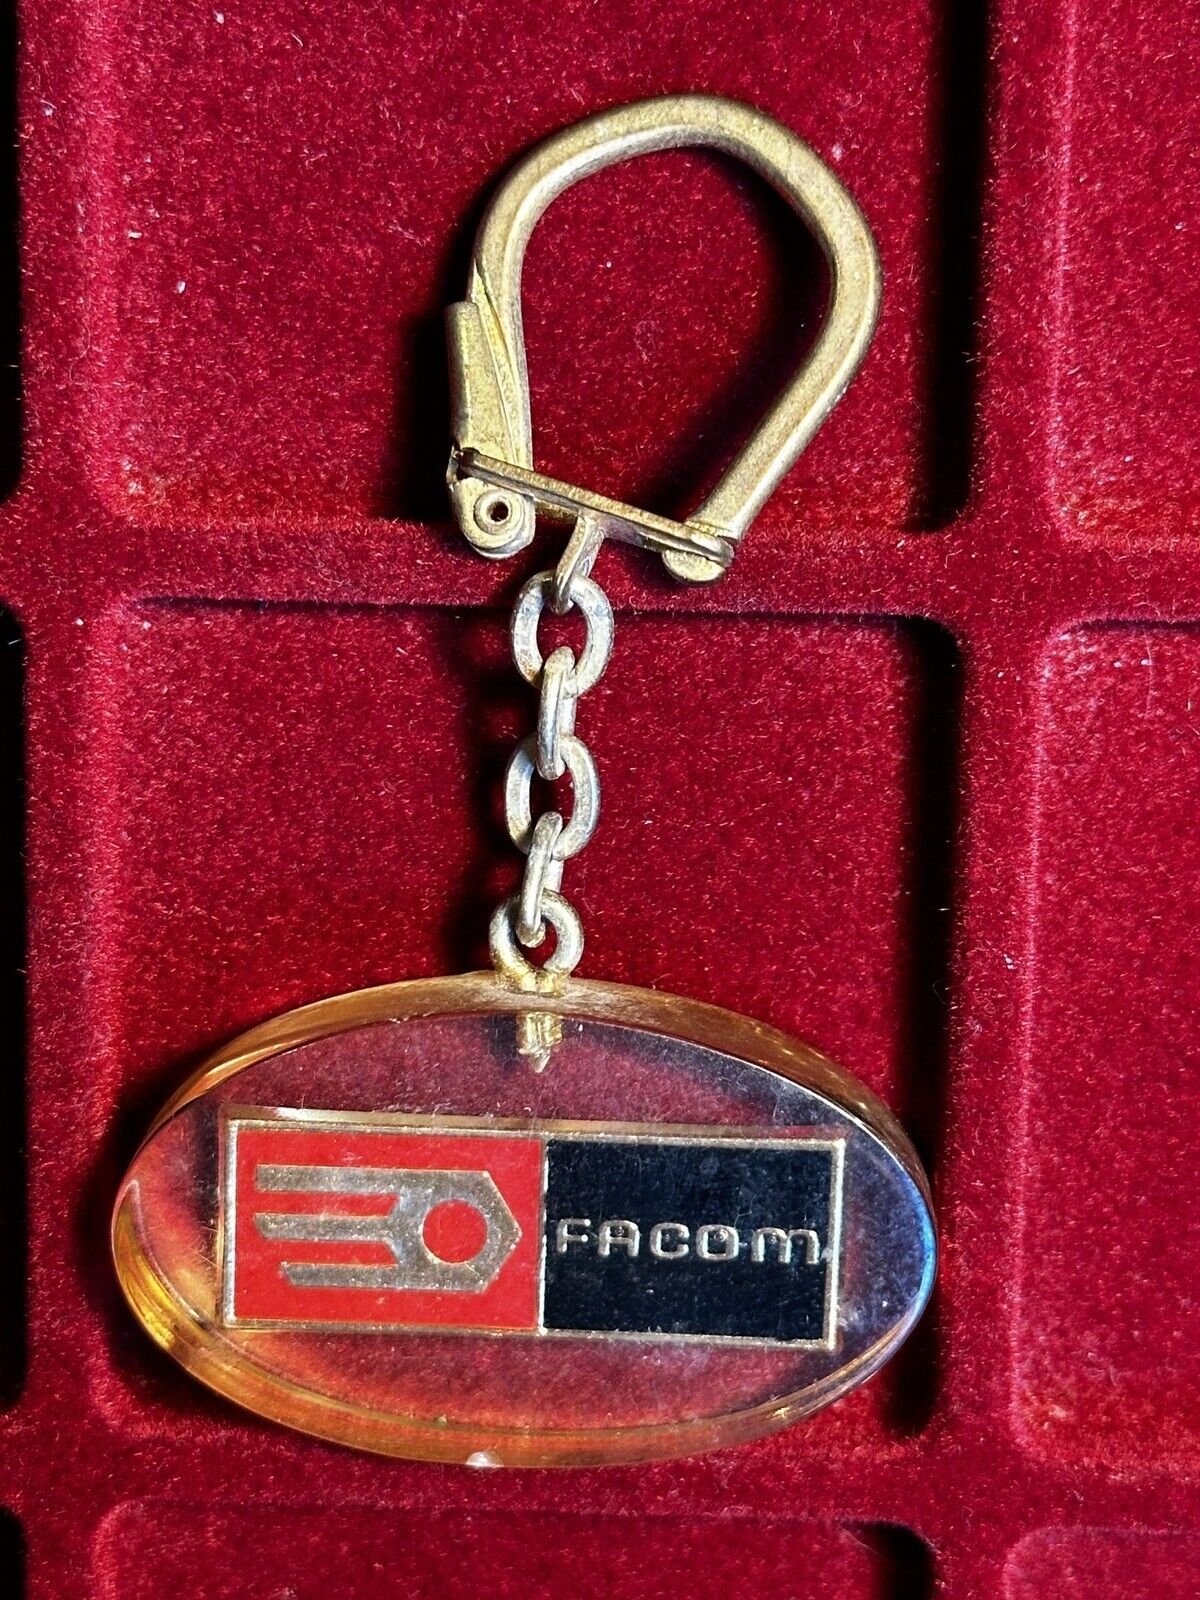 Rare Antique FACOM Bourbon Keychain